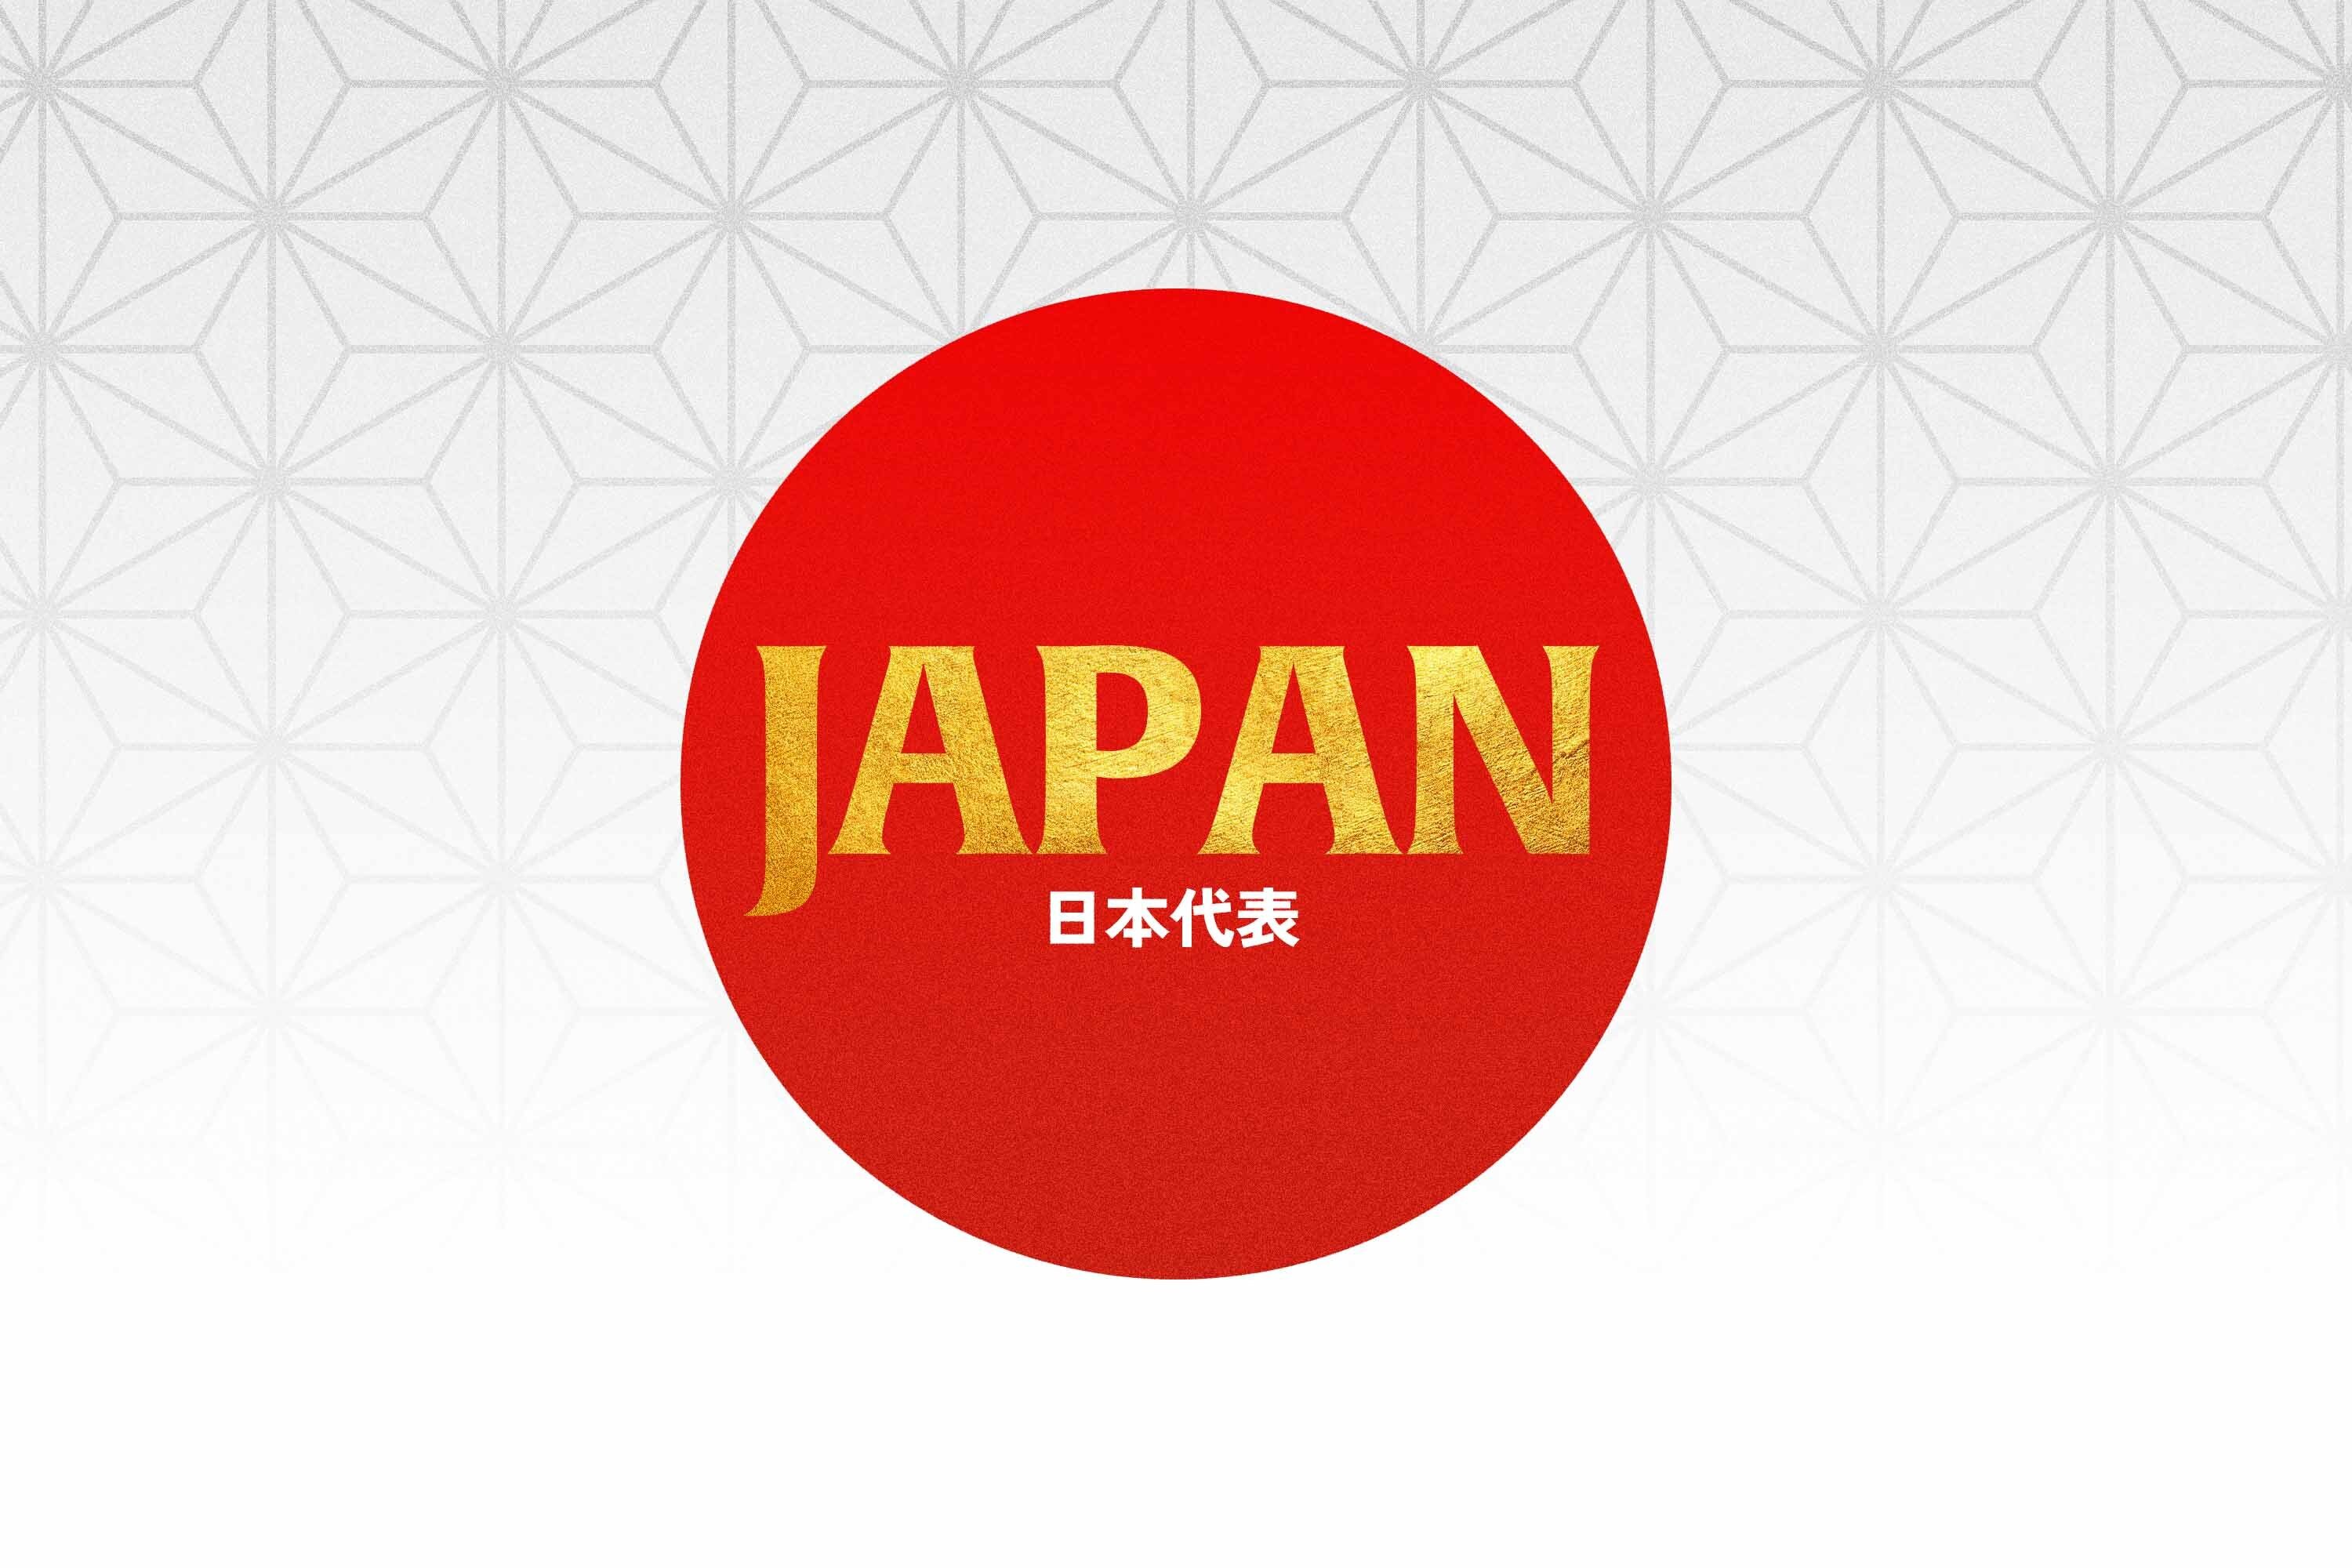 【代表情報】飯沼蓮選手 15人制日本代表メンバー追加招集のお知らせ